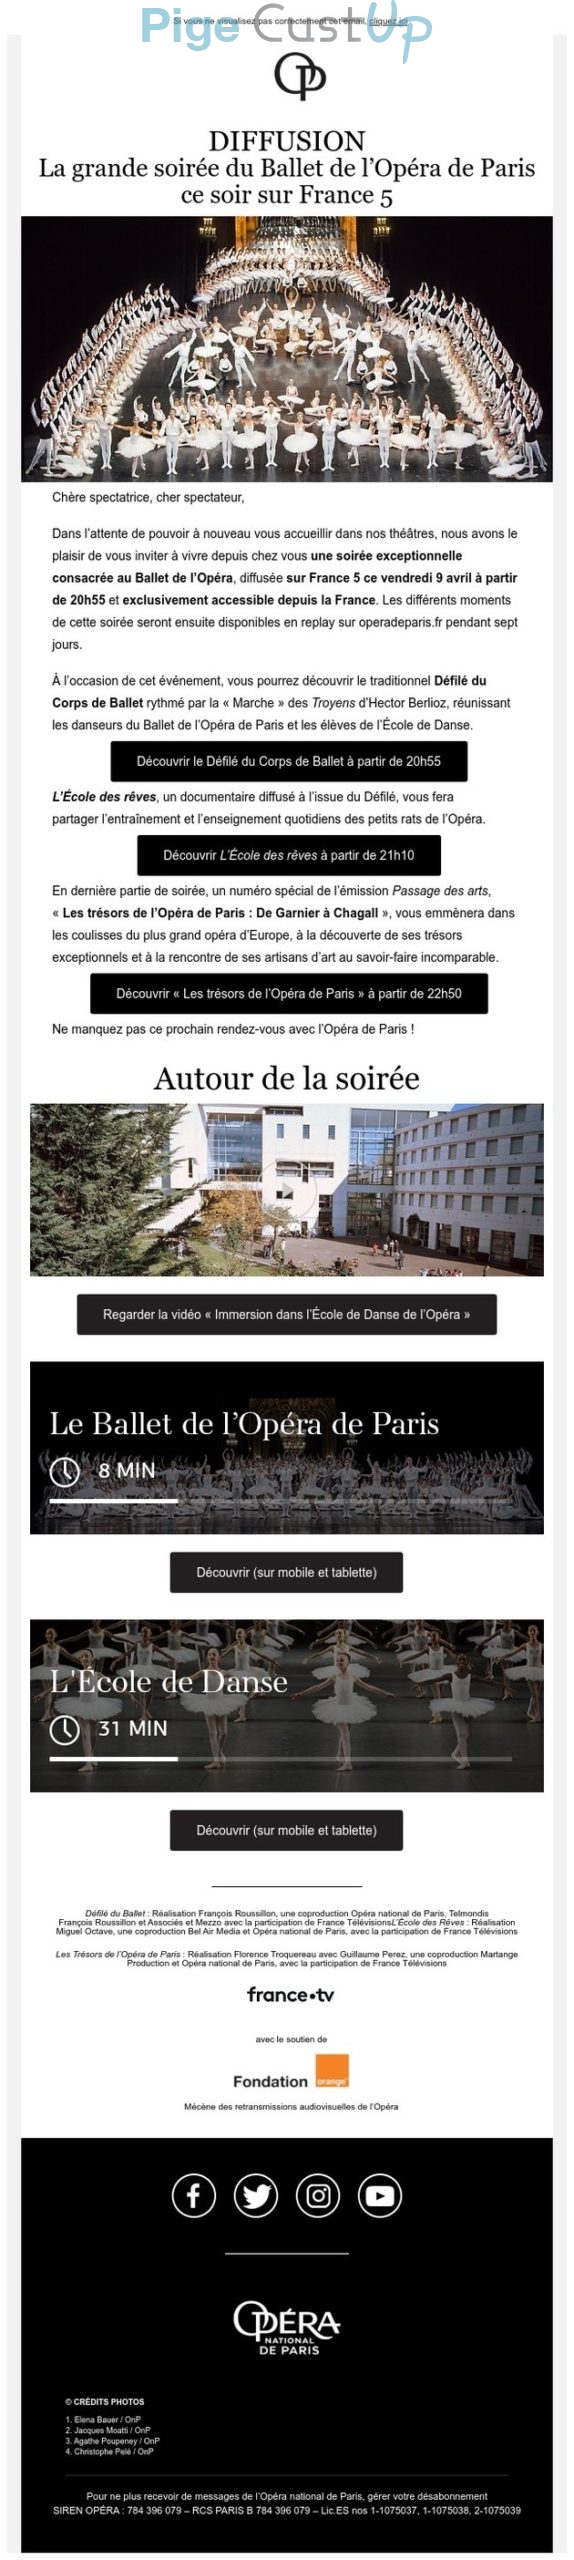 Exemple de Type de media  e-mailing - Opéra de Paris - Marketing relationnel - Evénement